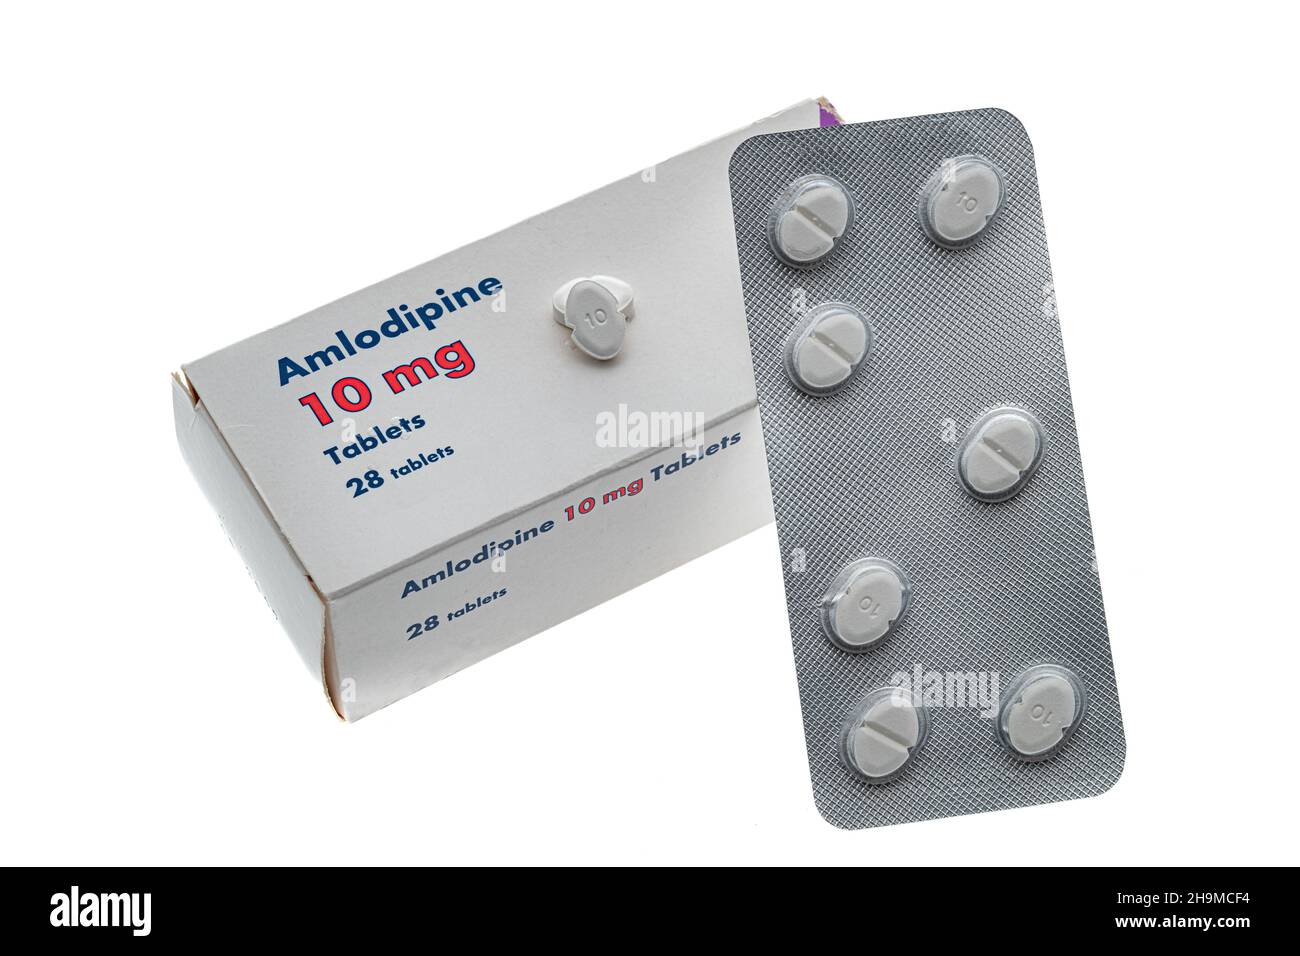 Une boîte générique de comprimés d'Amlodipine couramment utilisés pour le traitement de l'hypertension.Il s'agit de la version générique du médicament Norvasc. Banque D'Images